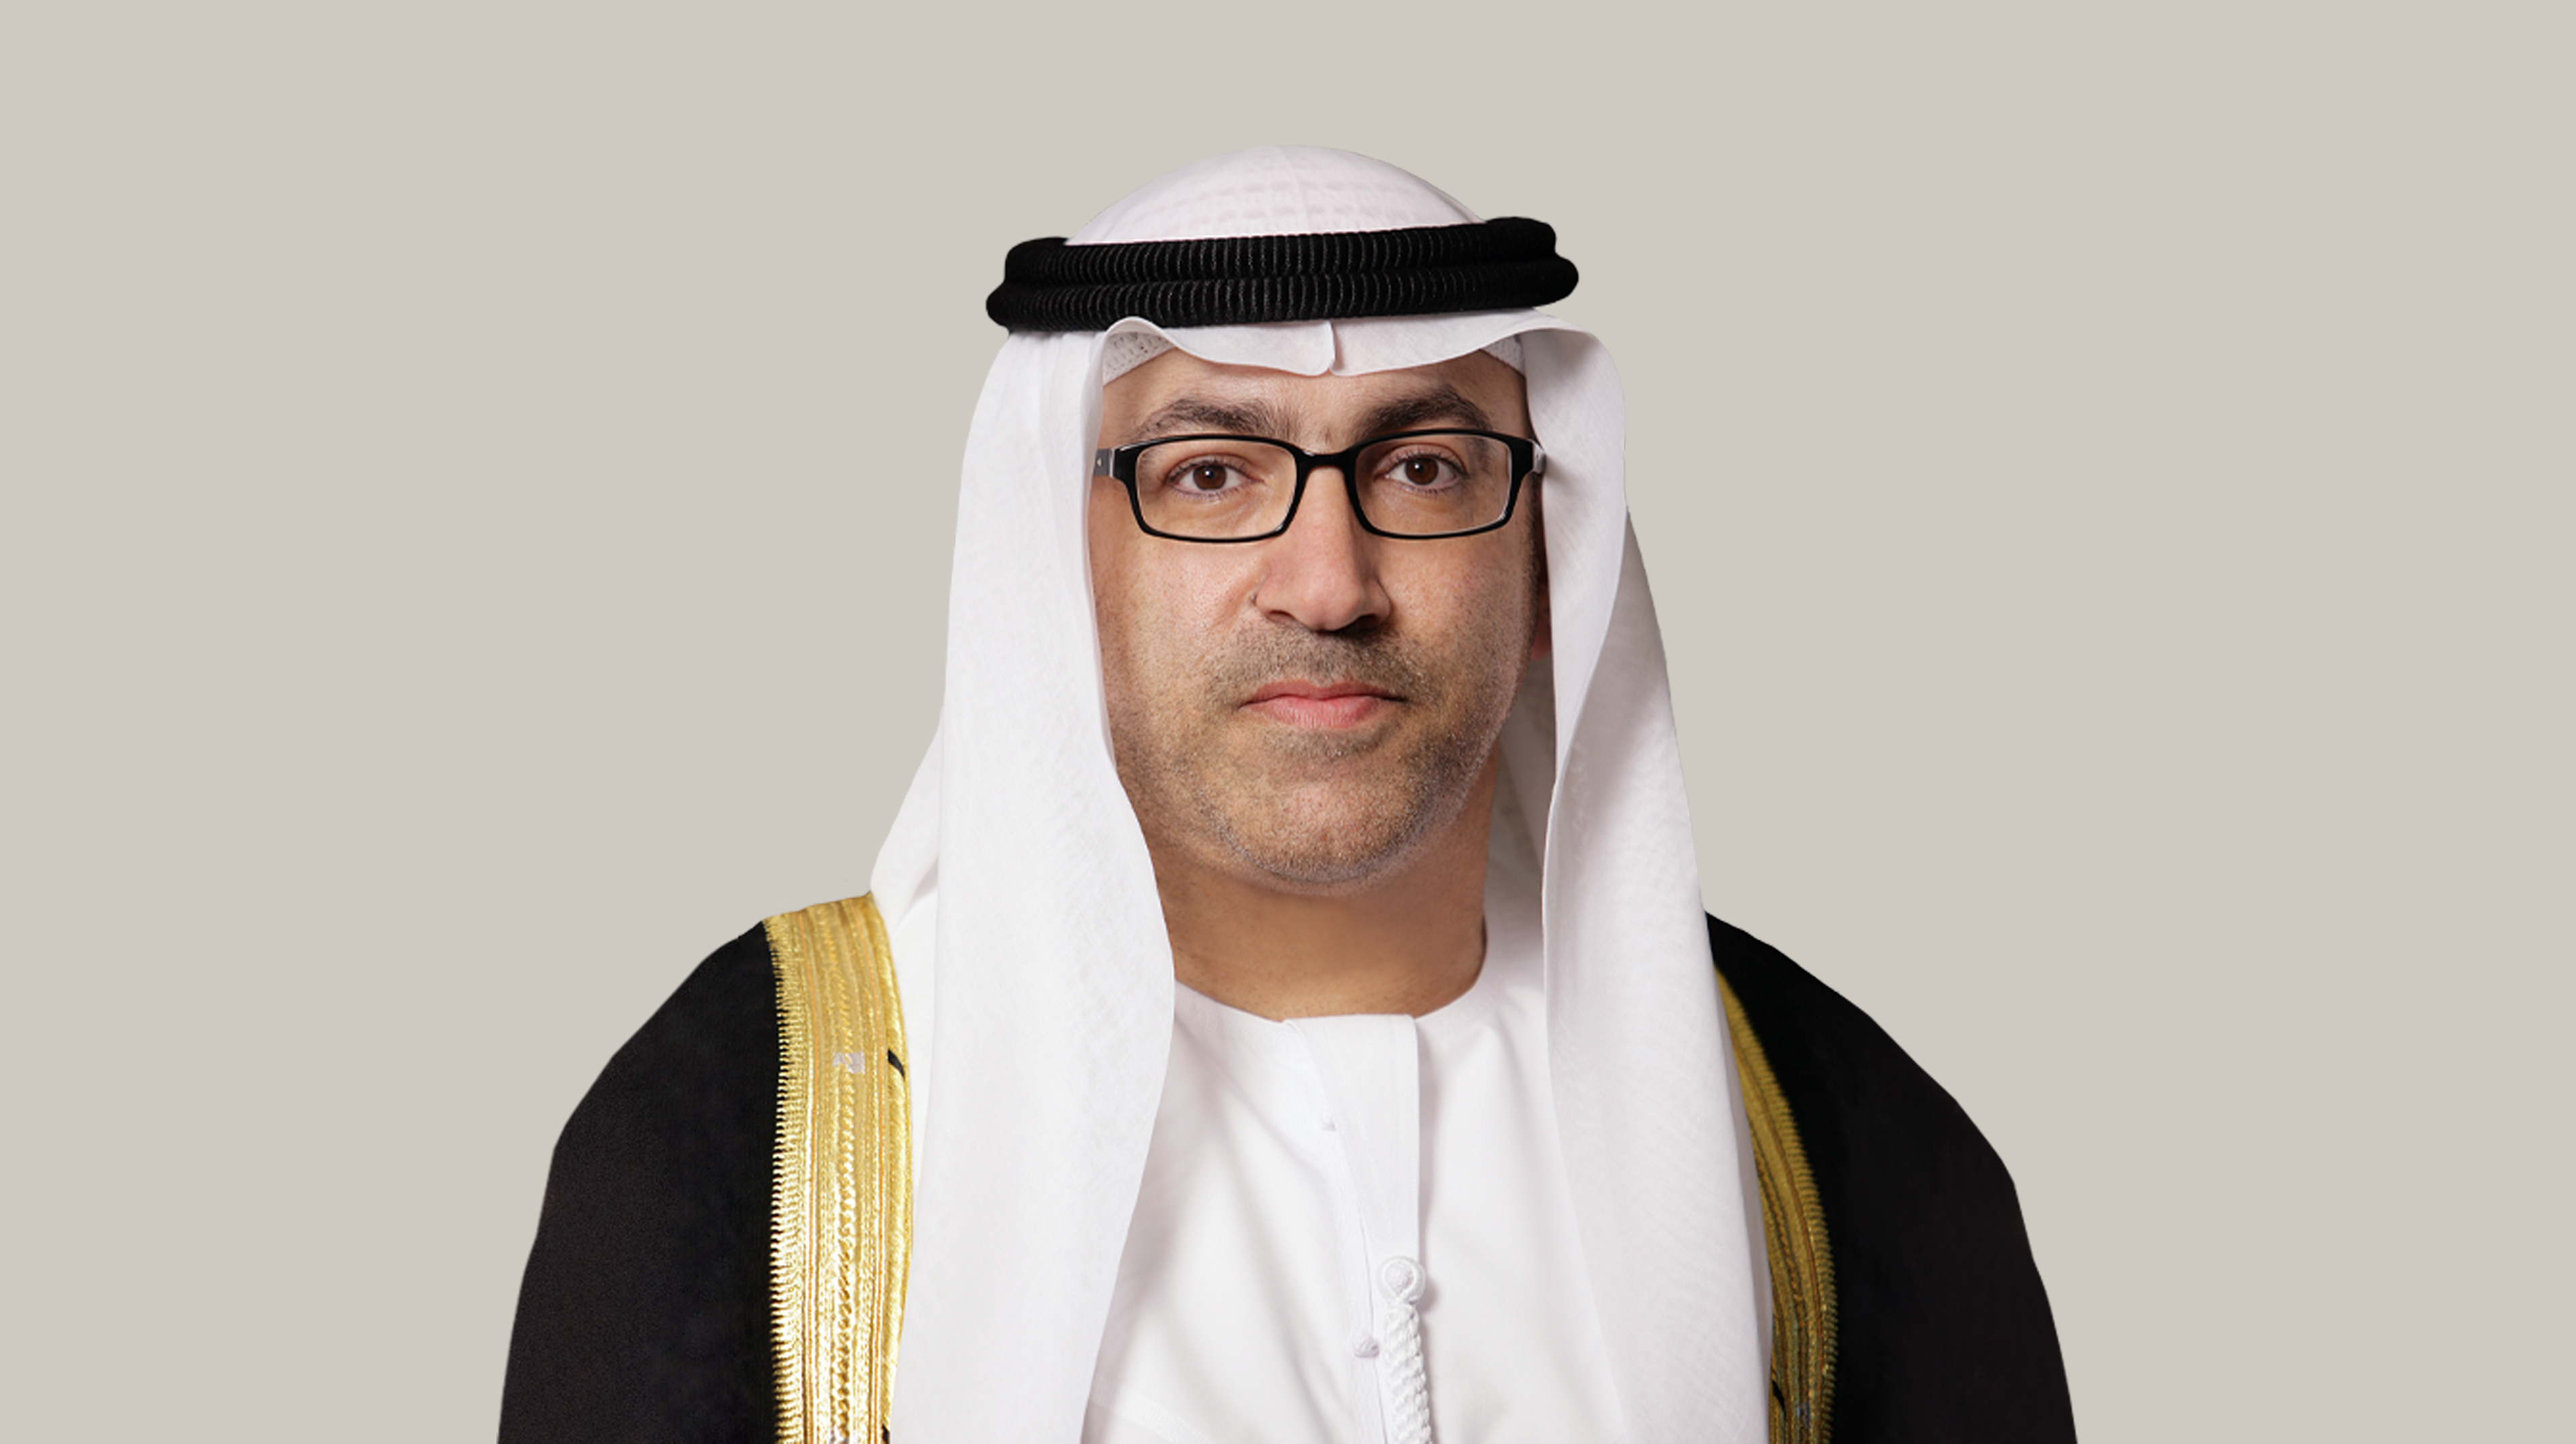 معالي العويس: استراتيجية "نحن الإمارات 2031" تمثل فصلاً جديداً في قصة نجاح ملهمة لدولة لا حدود لطموحاتها وتطلعاتها